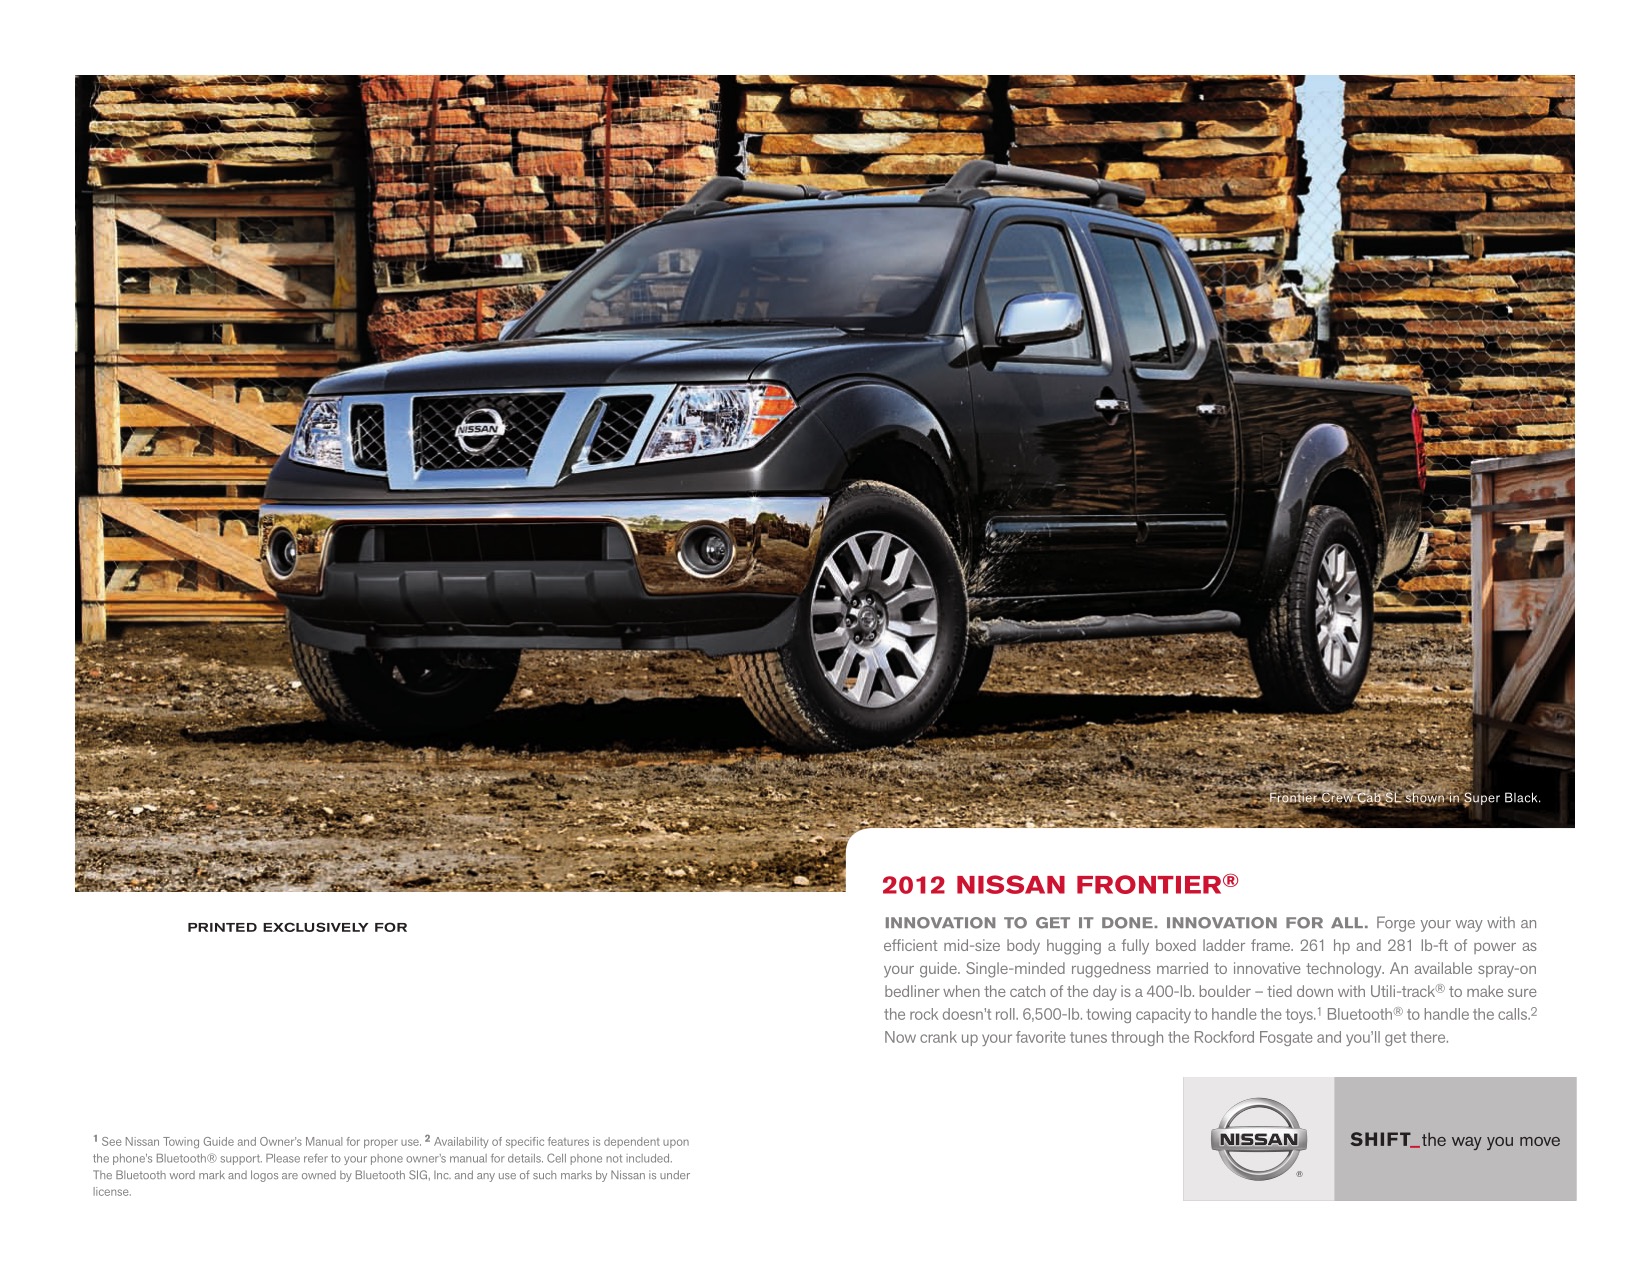 2012 Nissan Frontier Brochure